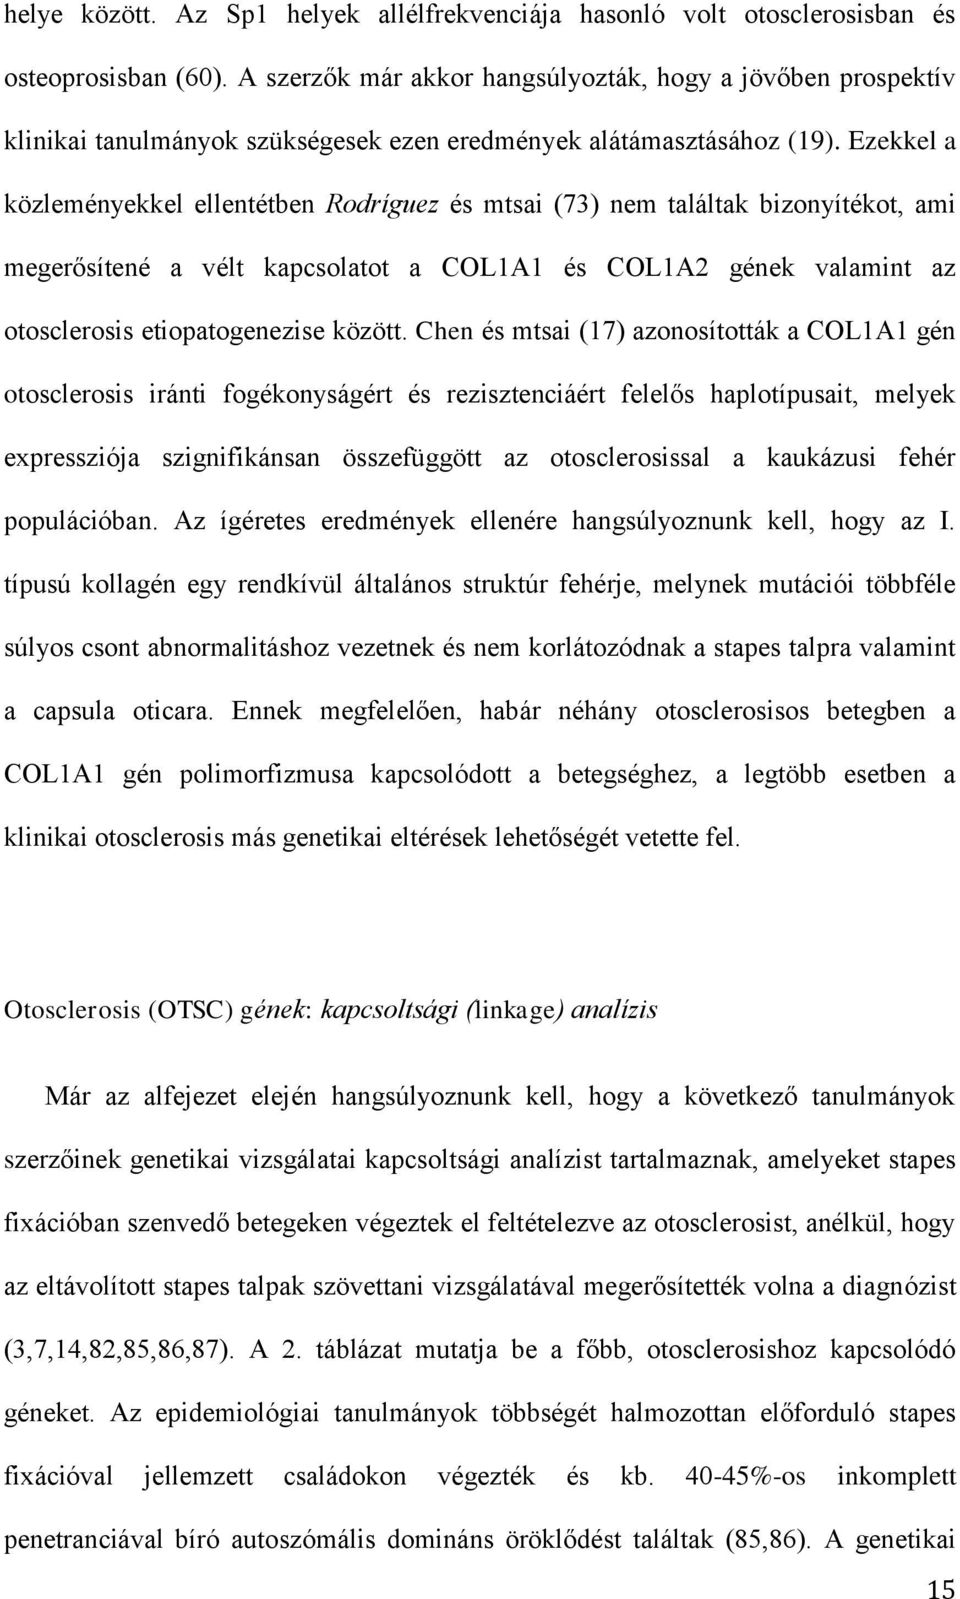 Ezekkel a közleményekkel ellentétben Rodríguez és mtsai (73) nem találtak bizonyítékot, ami megerősítené a vélt kapcsolatot a COL1A1 és COL1A2 gének valamint az otosclerosis etiopatogenezise között.